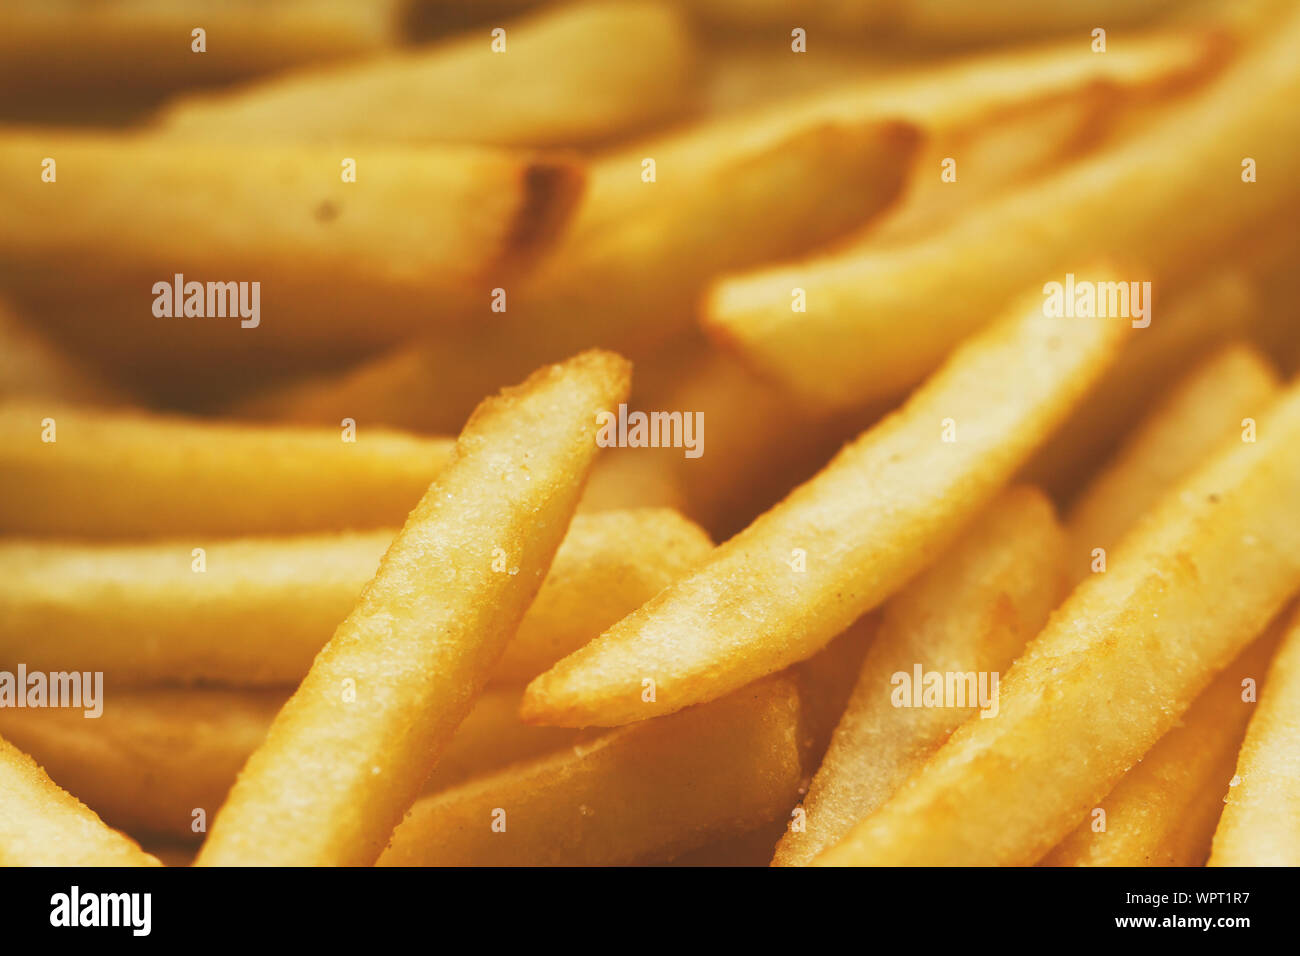 Patate fritte close up. Soluzione satura di colore giallo oro. Esso può essere utilizzato come sfondo. Il concetto di fast food, cibo delizioso, ristoranti, ecc. Foto Stock